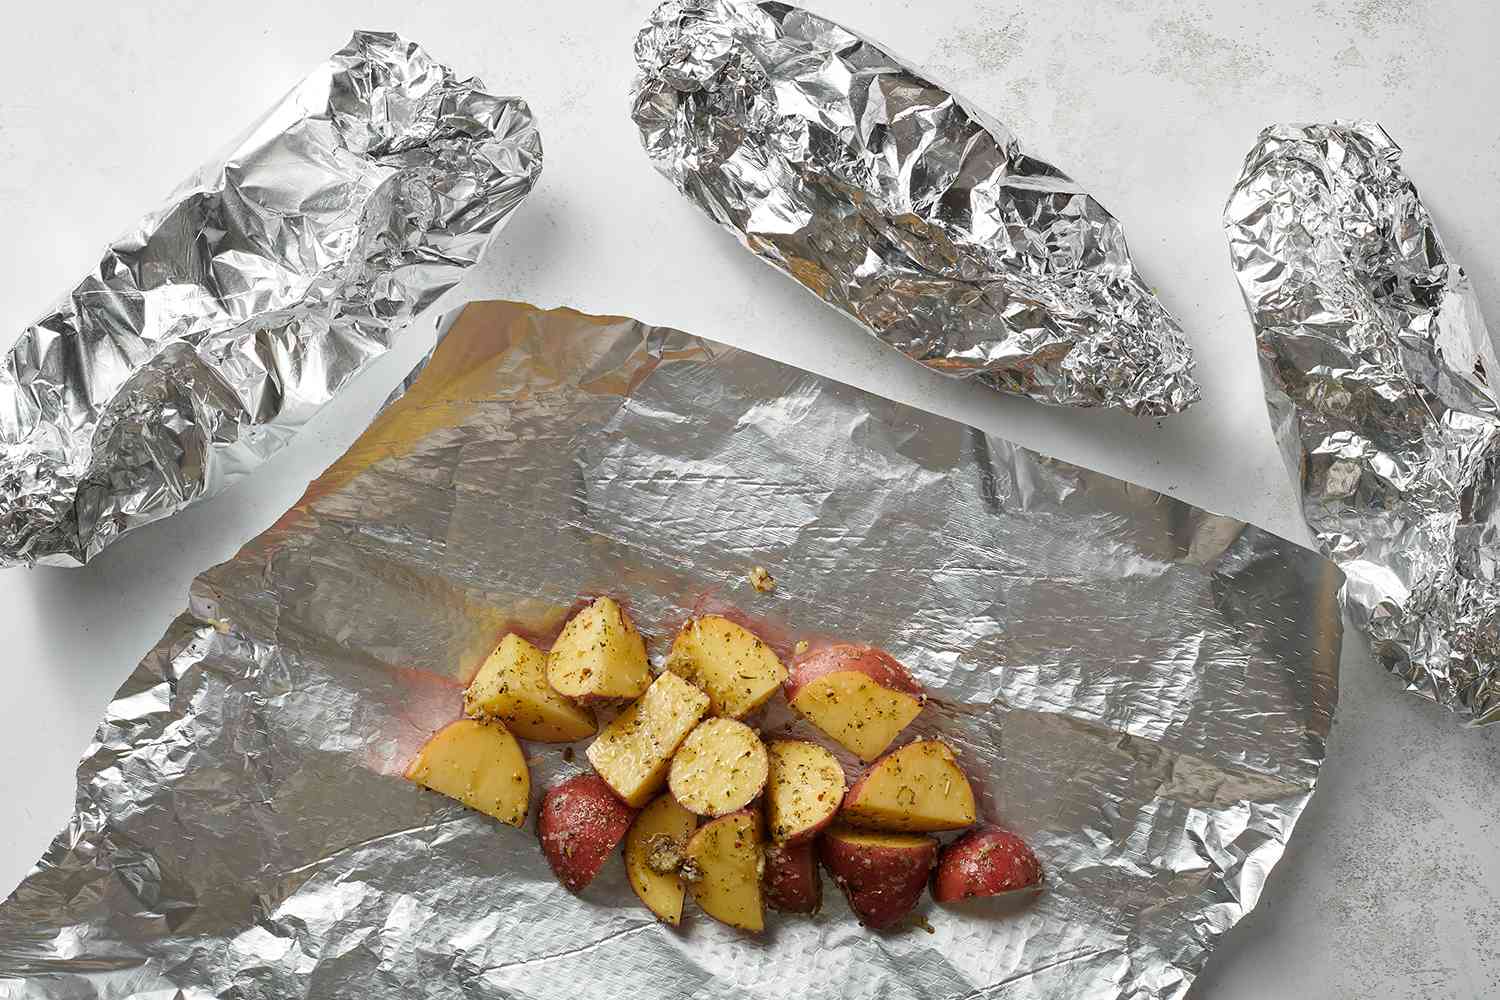 seasoned potatoes wrapped in foil